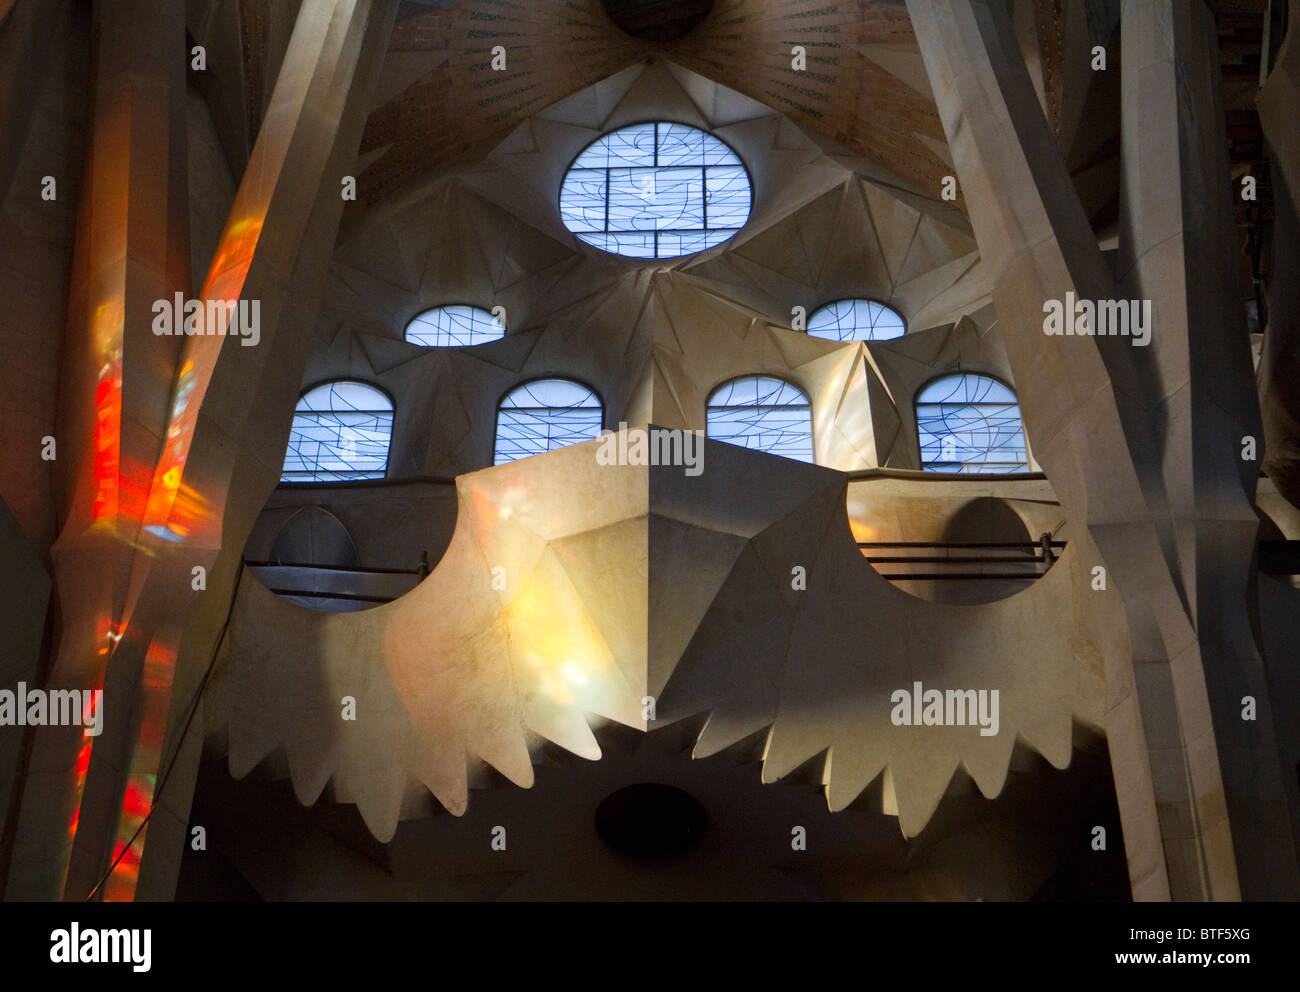 Boatplike dettaglio di una finestra in corrispondenza della Cattedrale della Sagrada Familia di Gaudi, illuminate dalla luce del sole attraverso le vetrate colorate delle Foto Stock